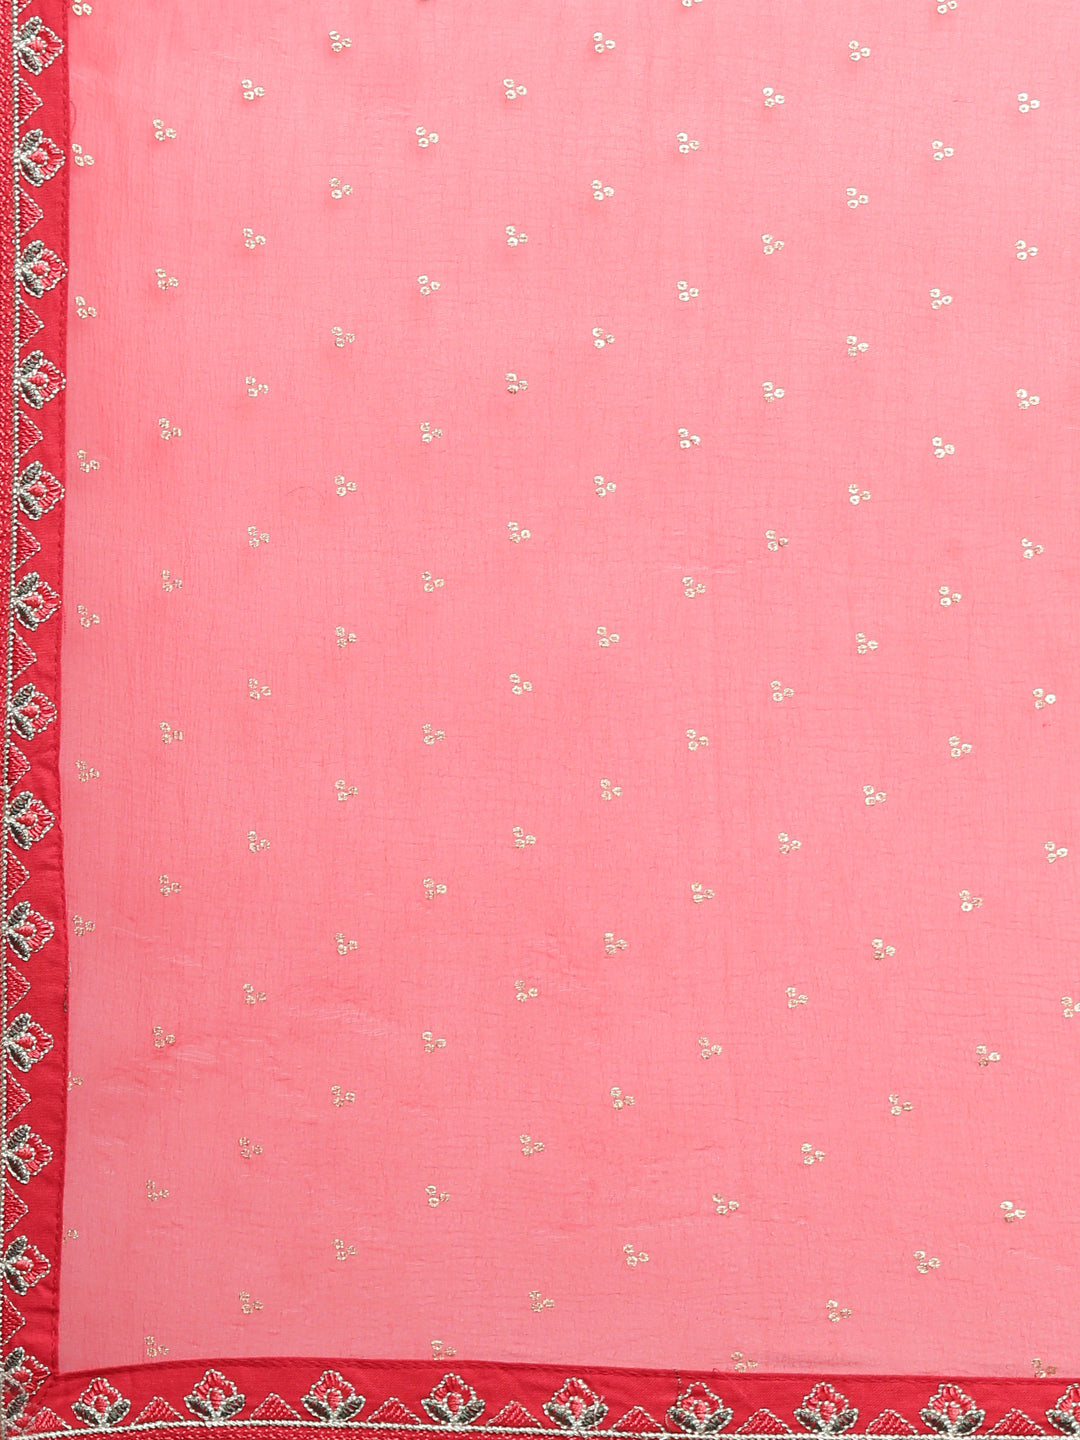 Neeru's Red Regular Straight Printed Kurta And Trousers With Dupatta